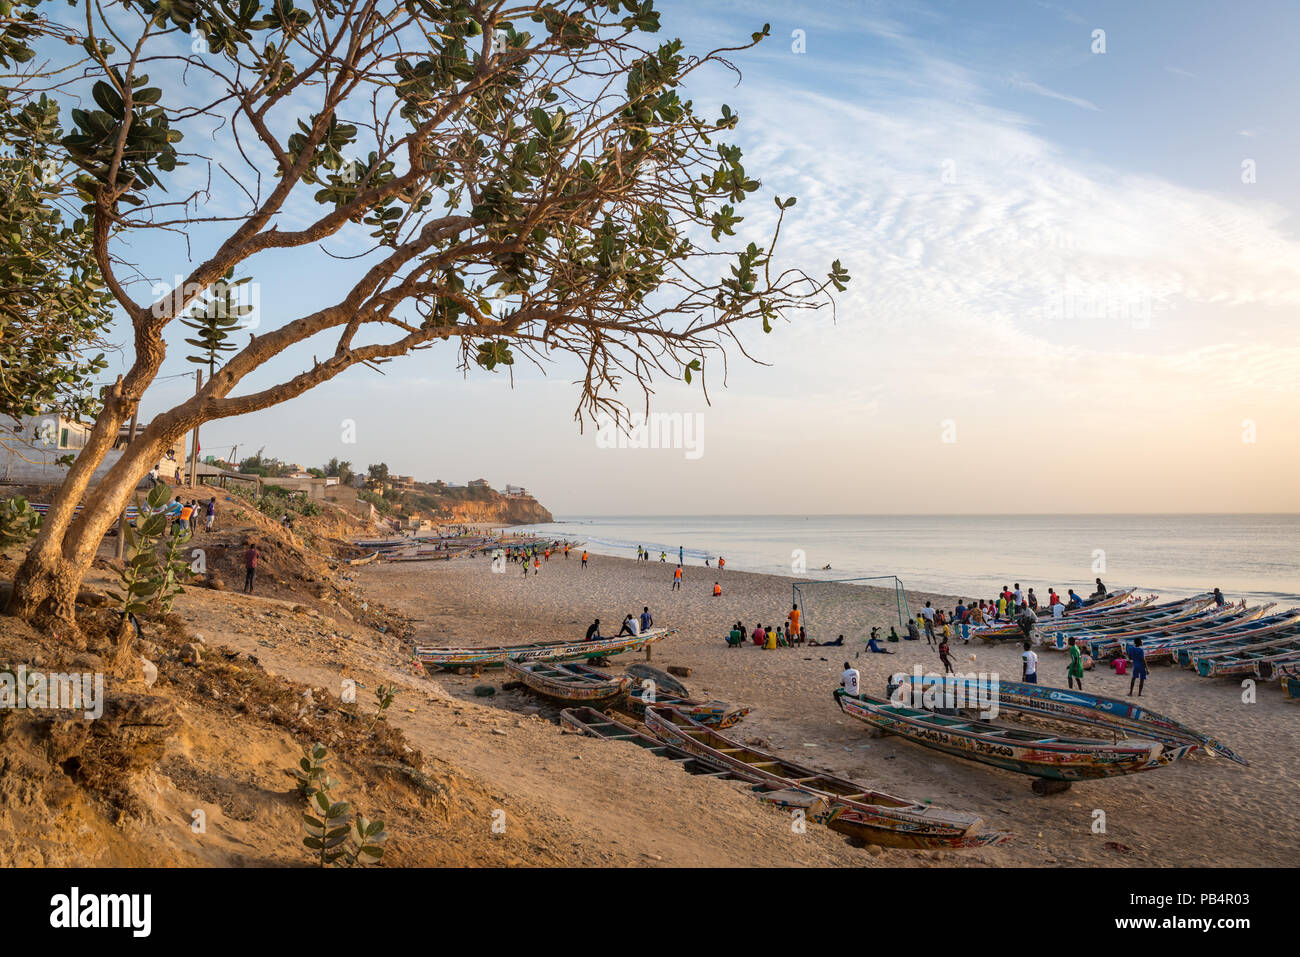 The beach at Toubab Dialao, Senegal Stock Photo